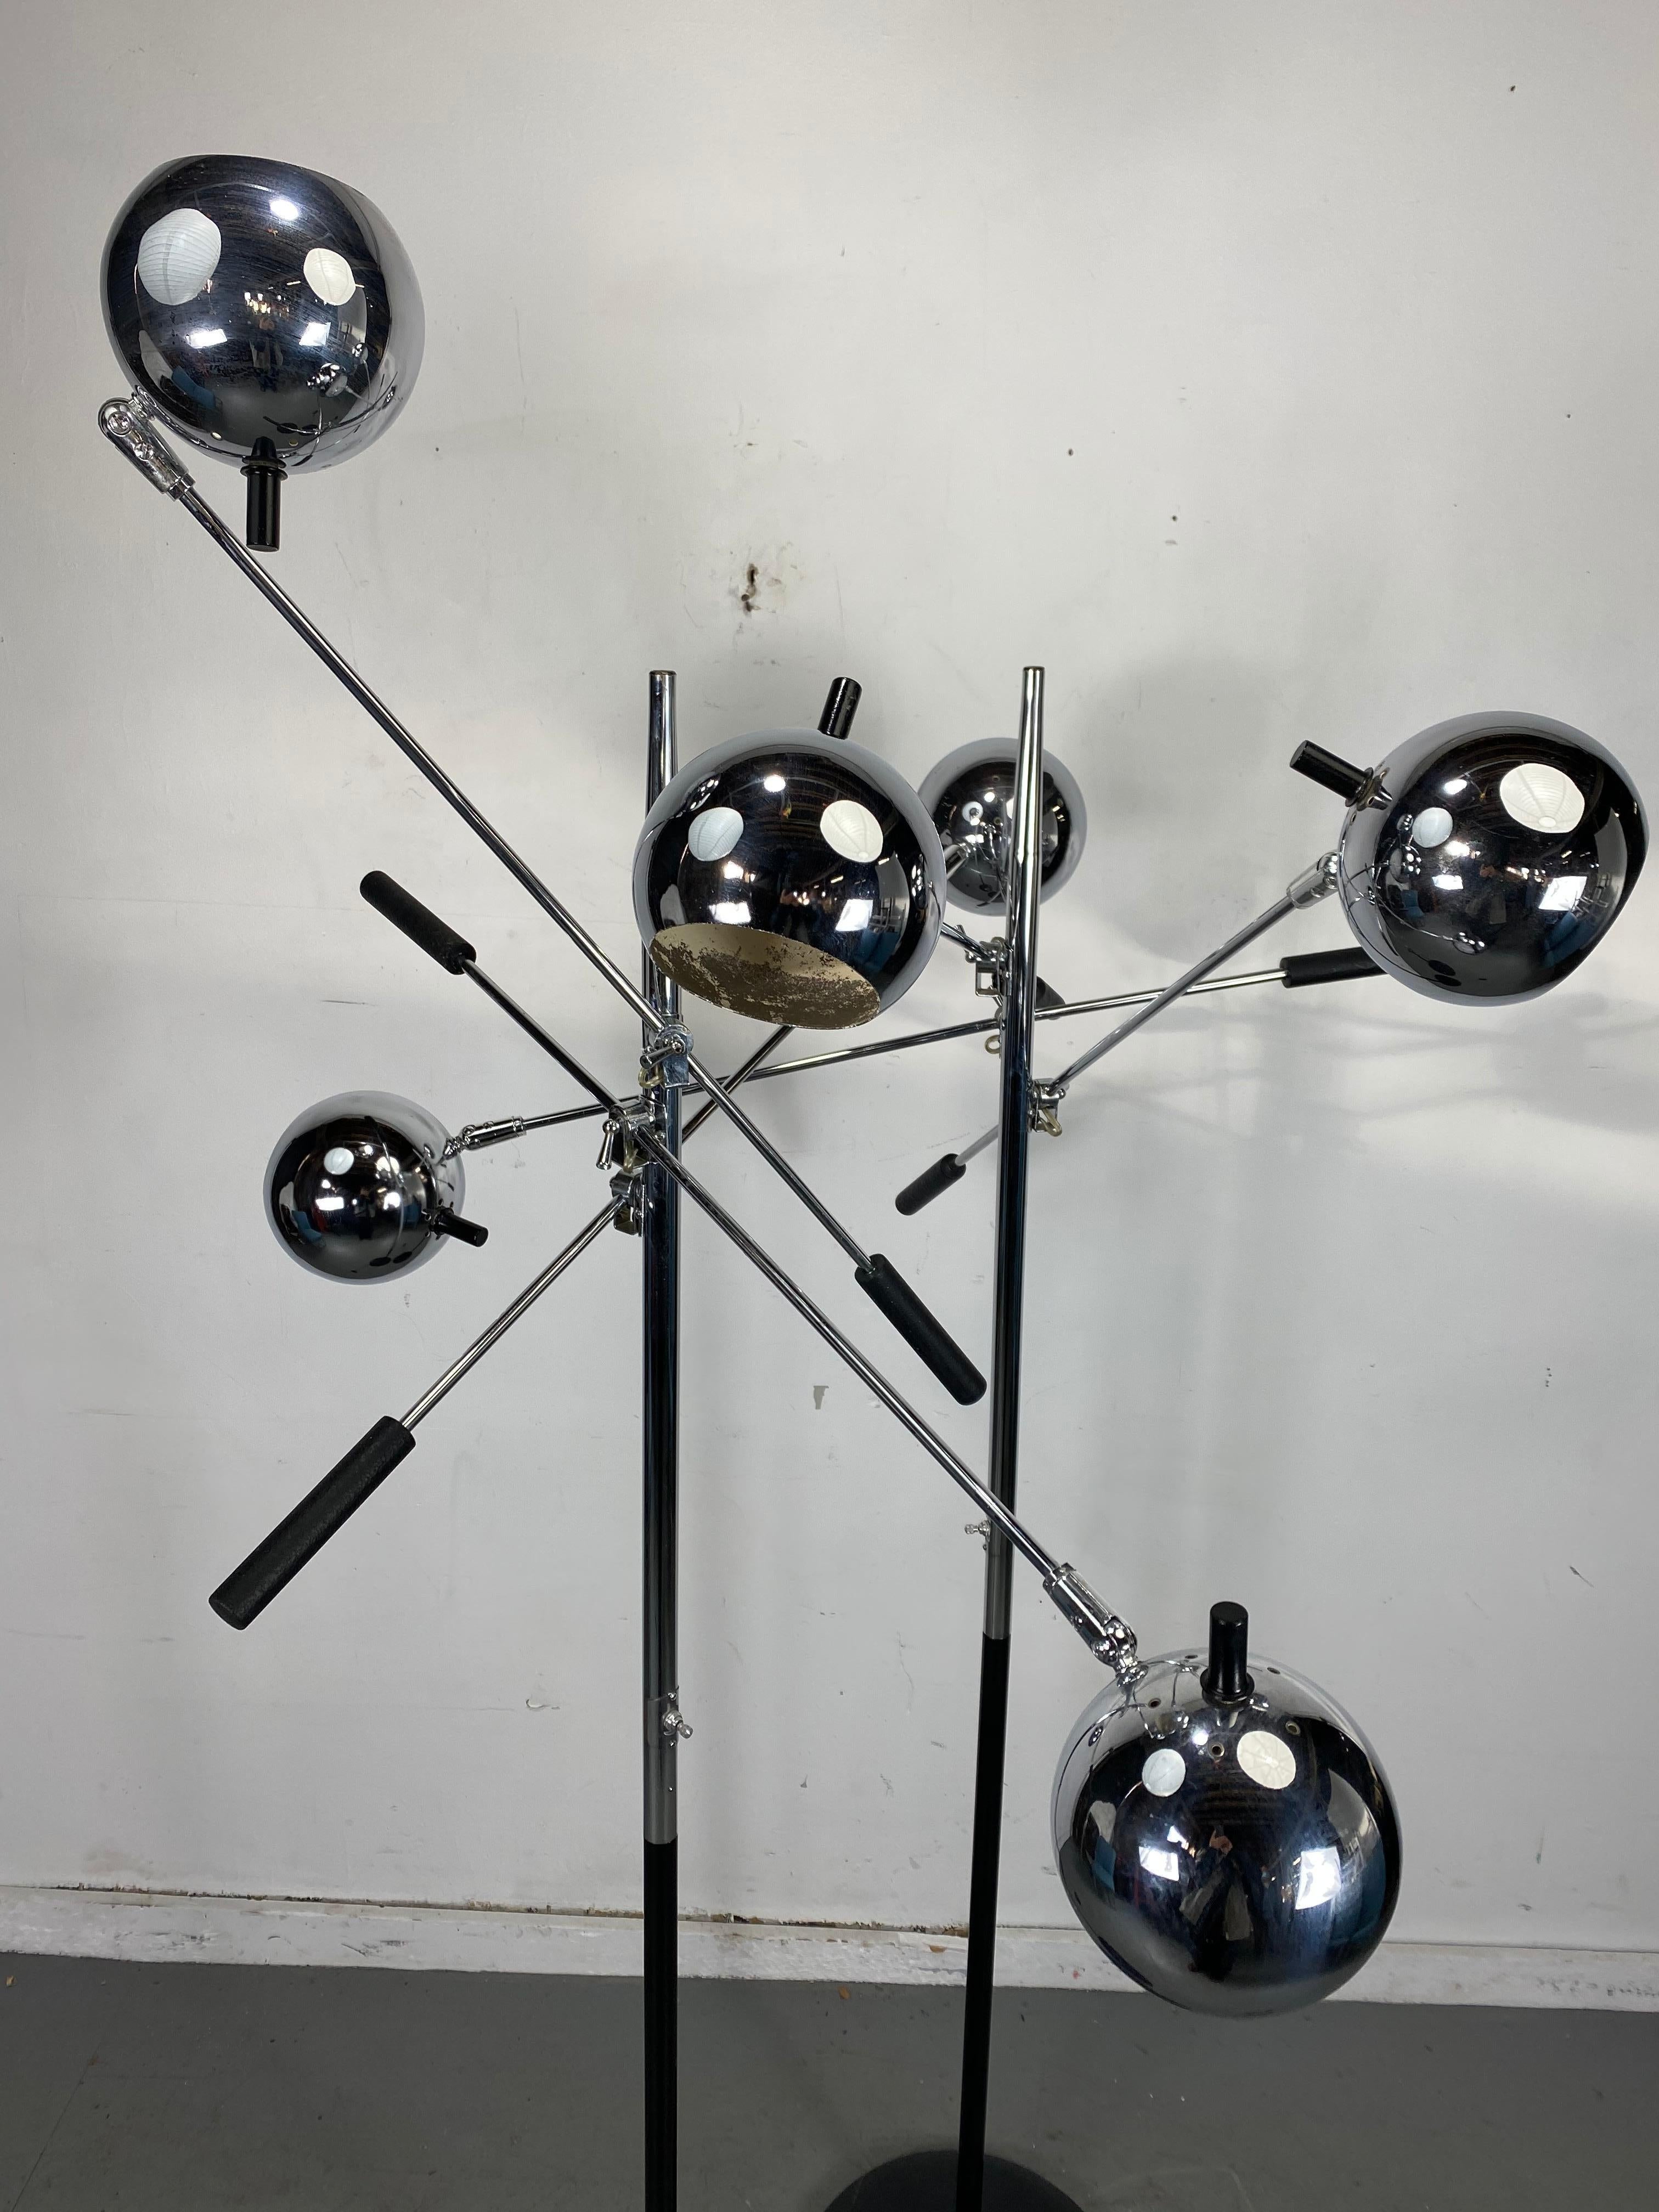 American Matched Pair of Robert Sonneman Triennale Eyegball Orbiter Floor Lamps